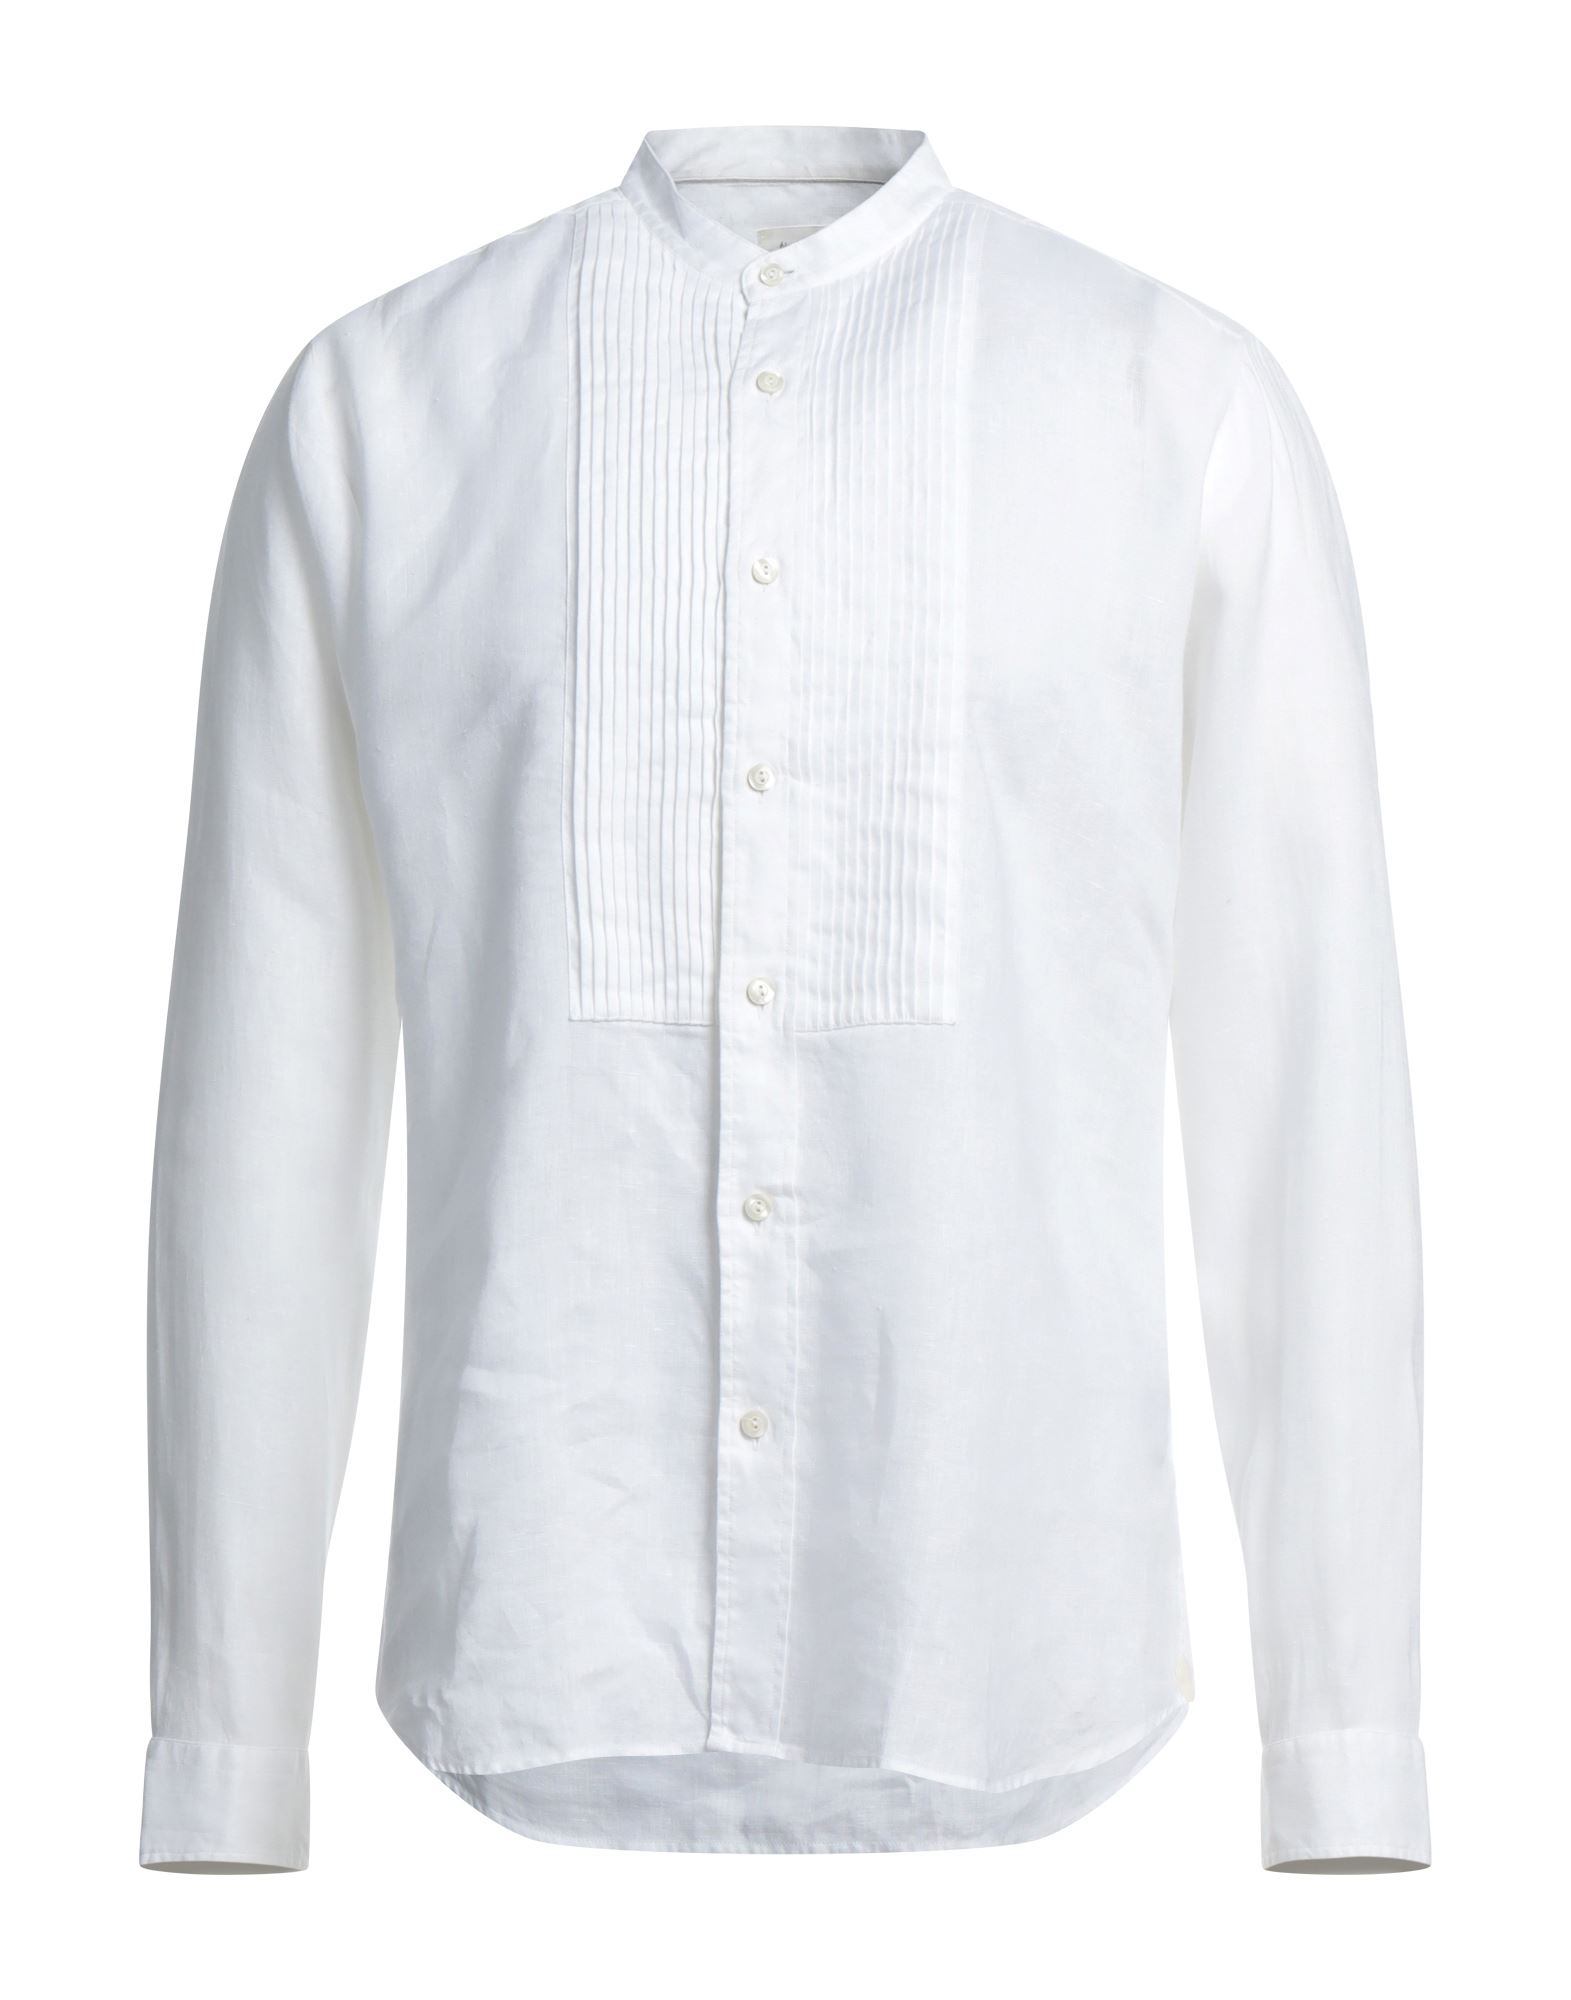 Tintoria Mattei 954 Man Shirt White Size 17 Linen